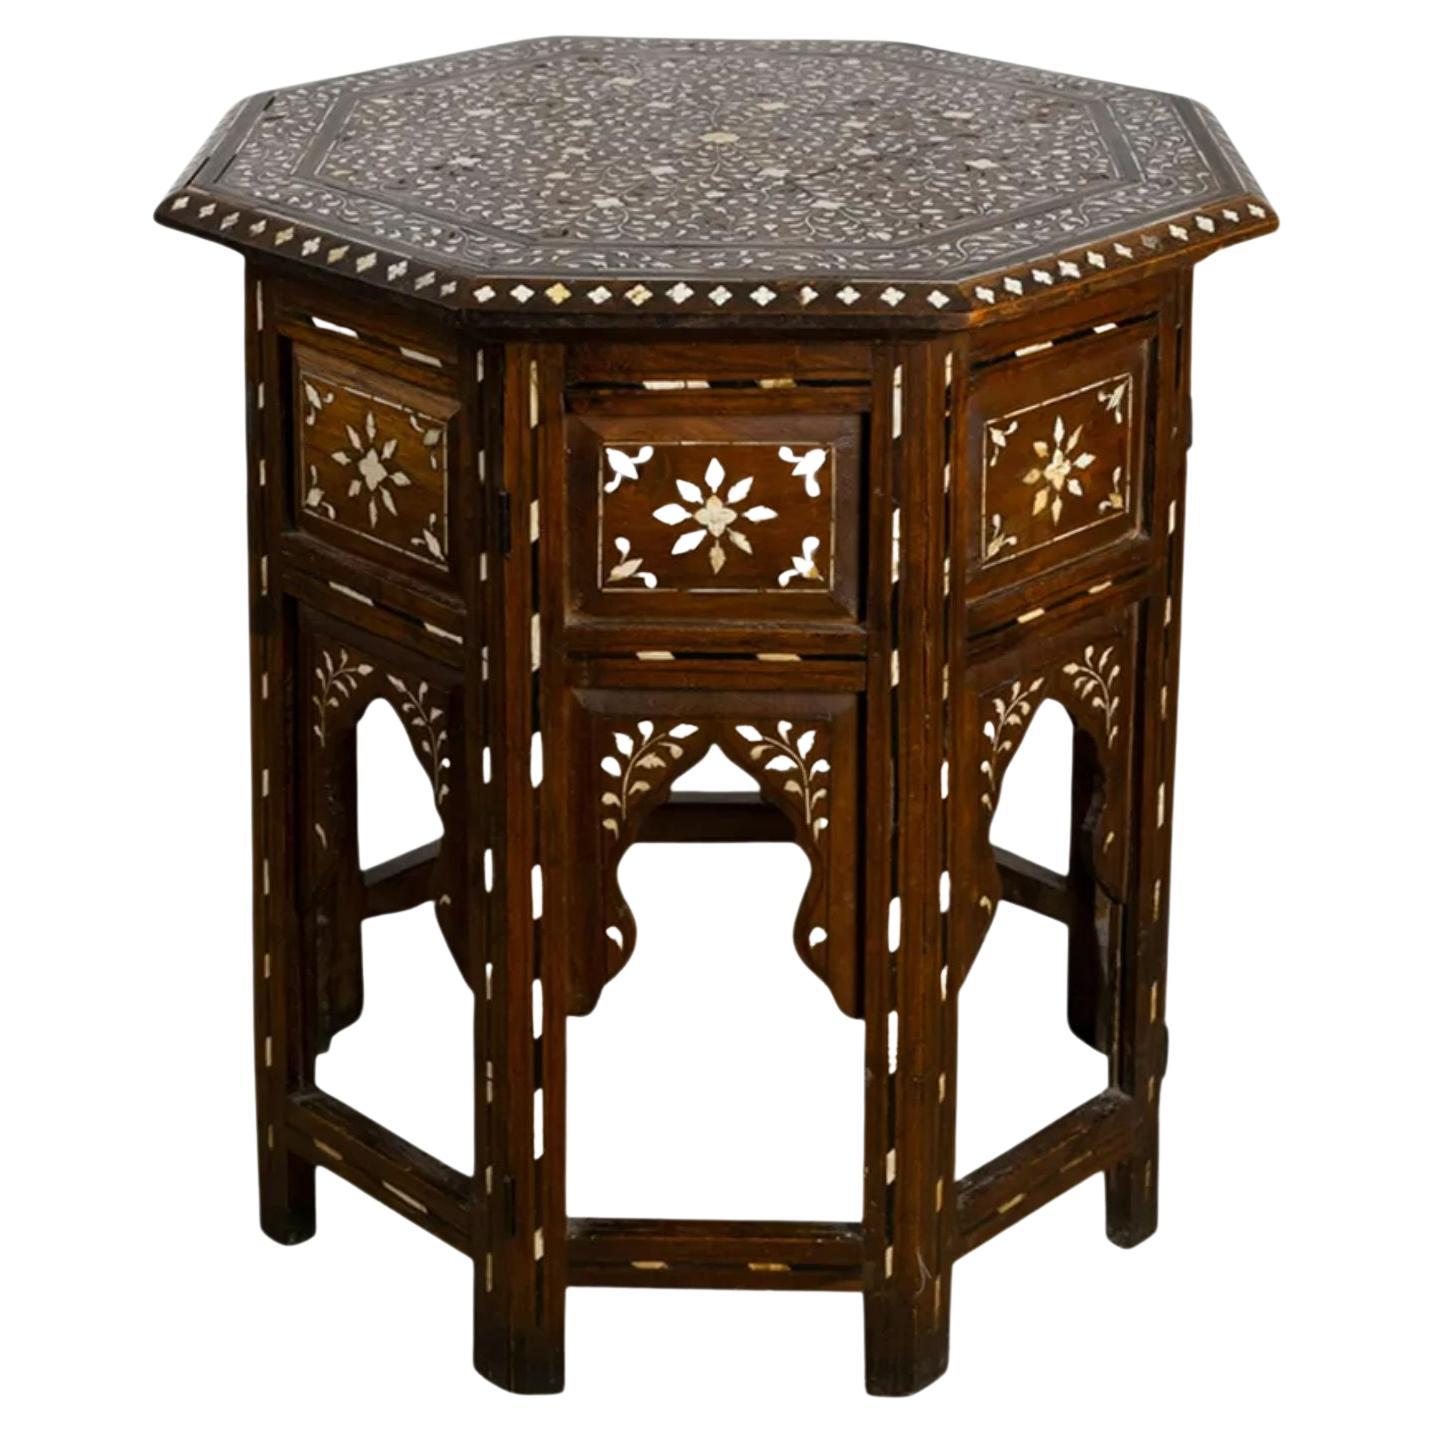 Table octogonale de Hoshiarpur, 19e siècle